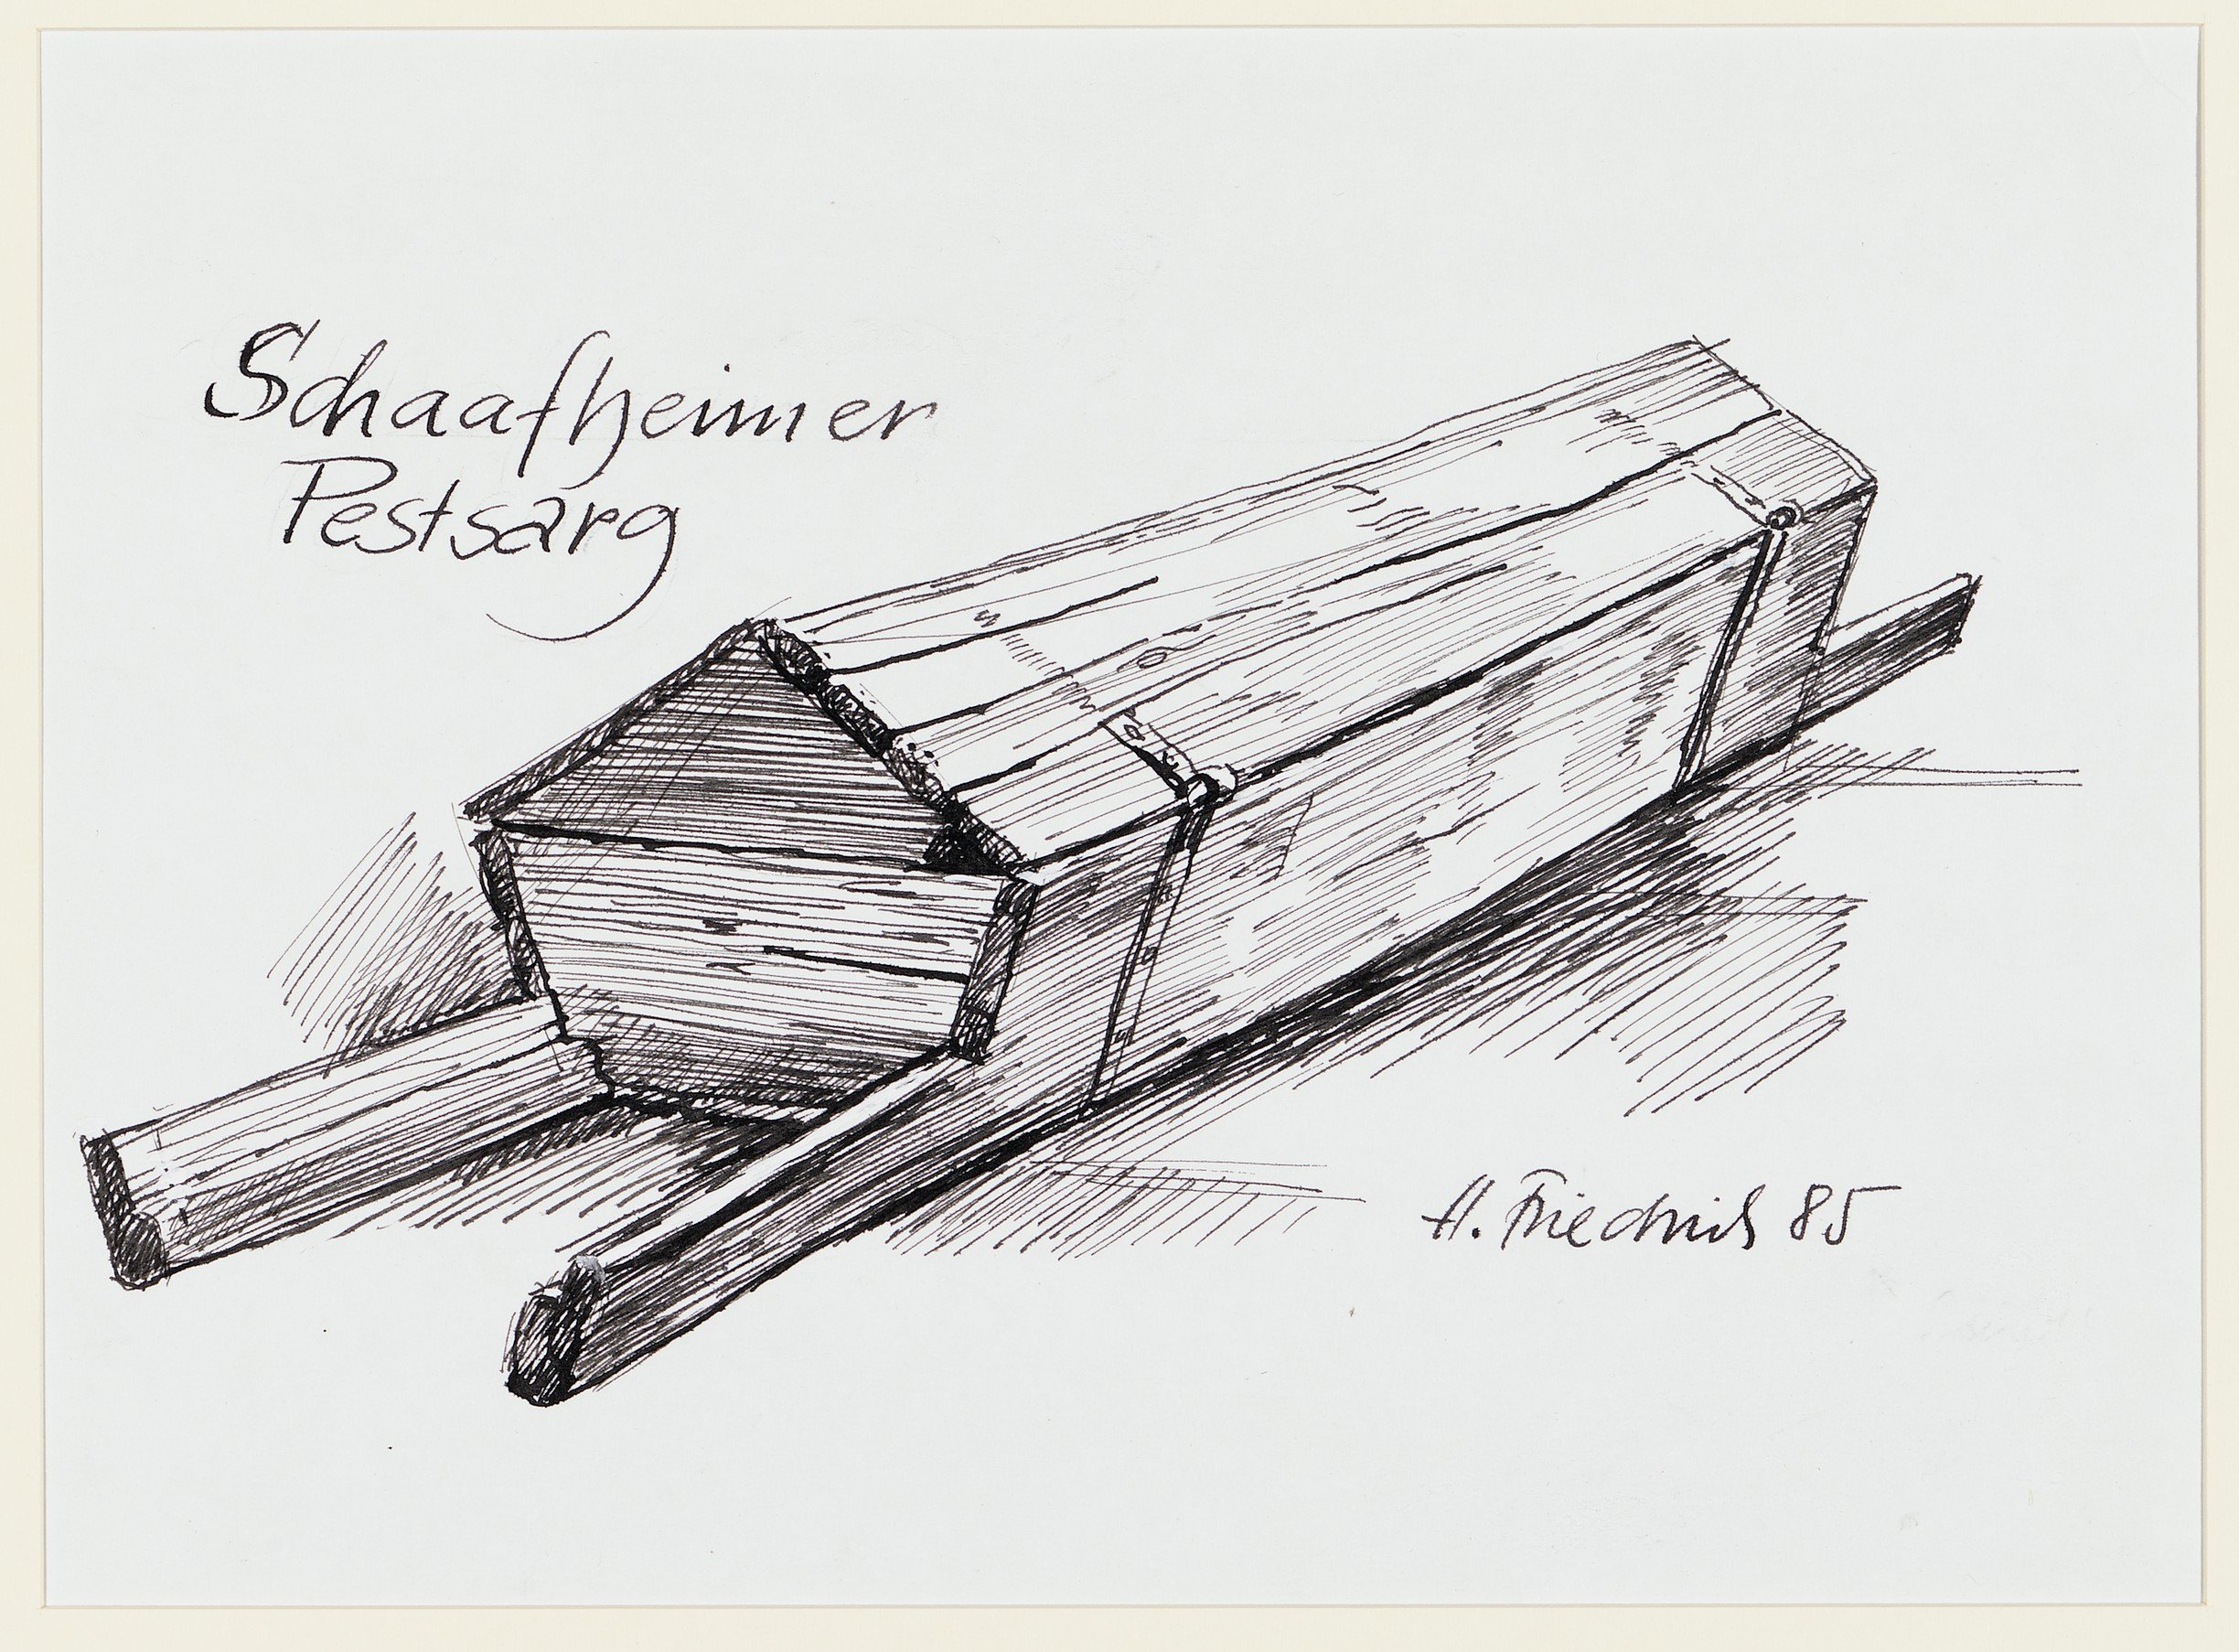 Zeichnung "Schaafheimer Pestsarg" (Museum für Sepulkralkultur CC BY-NC-SA)